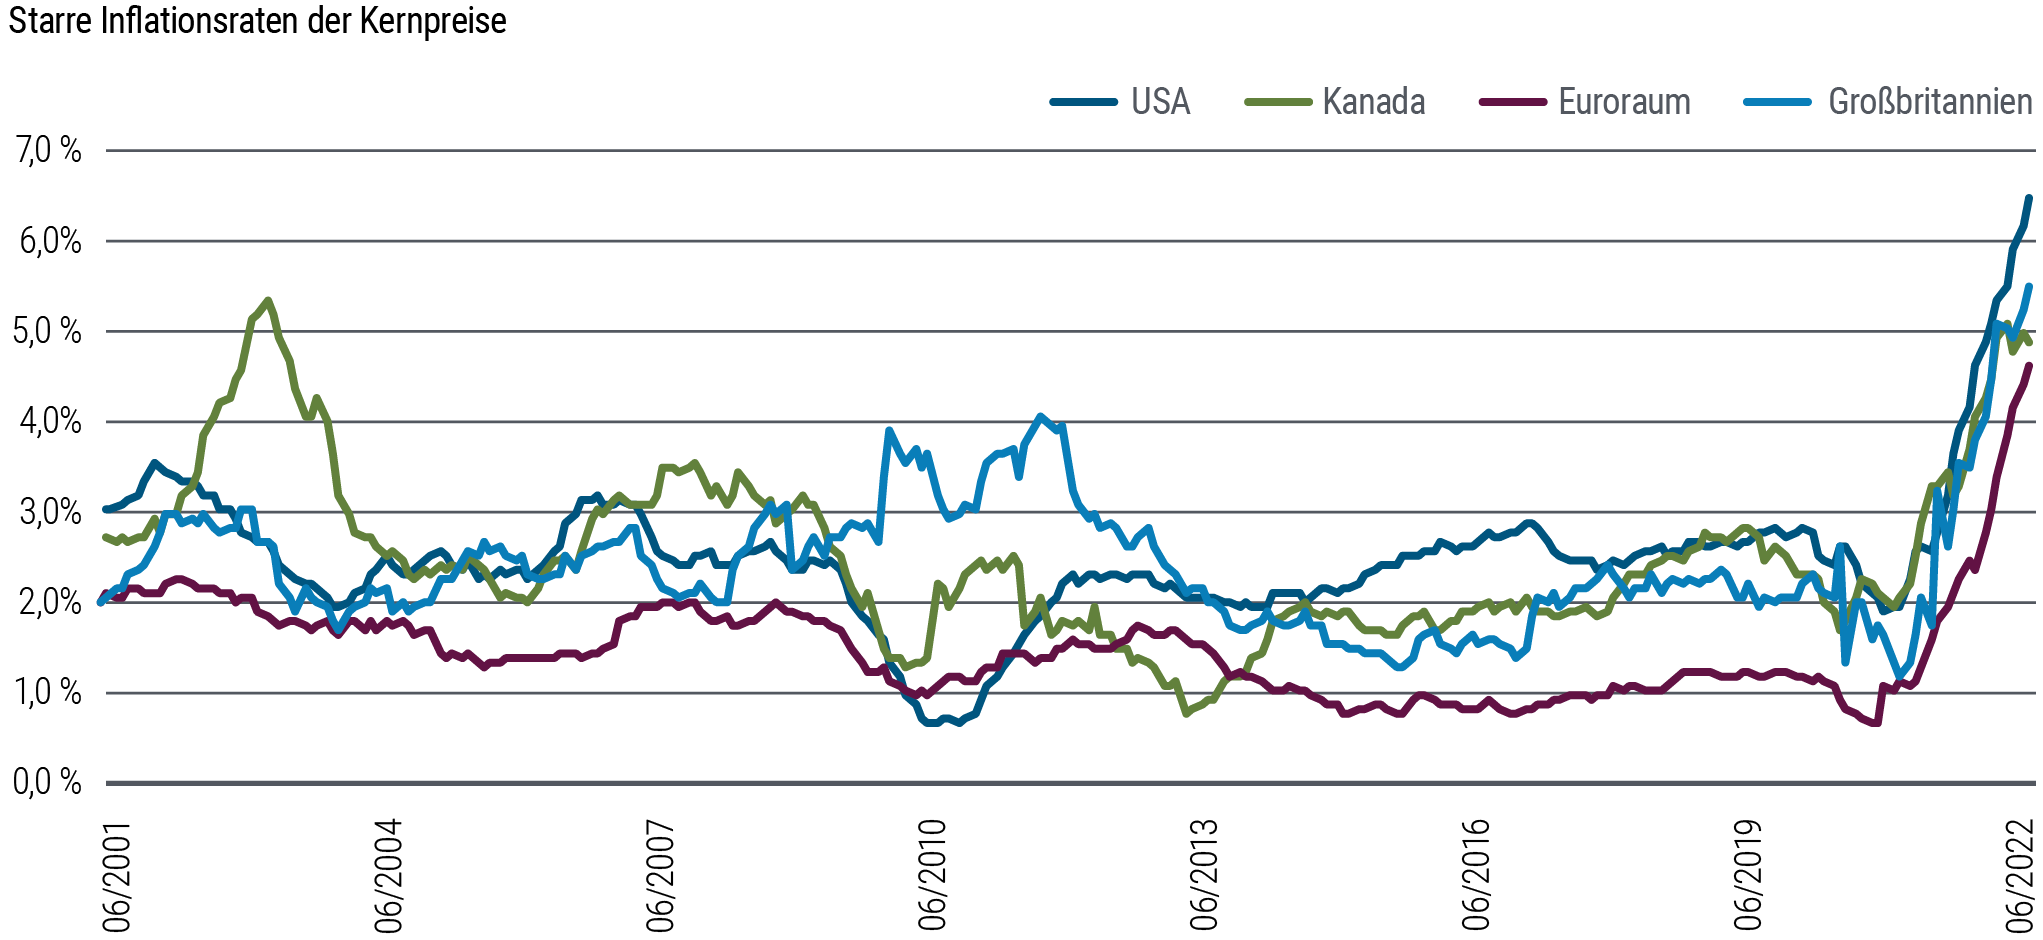 Ein Liniendiagramm zeigt die annualisierten „hartnäckigen“ Kerninflationsraten von Juni 2001 bis Juli 2022 für die USA, Kanada, Großbritannien und die Eurozone. „Hartnäckig“ („sticky“) wird unter dem Diagramm näher definiert. Die Regionen weisen in jüngster Zeit einen starken Anstieg des „hartnäckigen“ Verbraucherpreisindex (VPI) auf, beginnend mit Großbritannien Ende 2020, gefolgt von den anderen Staaten zu Beginn des Jahres 2021. Der „hartnäckige“ VPI in den Vereinigten Staaten lag zum 31. Juli 2022 bei 6,5 Prozent gegenüber nur knapp zwei Prozent Anfang 2021. In der Eurozone stieg die Zahl bis Ende Juli auf 4,7 Prozent von rund 0,7 Prozent gegen Ende 2020. Die Grafik zeigt auch, wie die „hartnäckige“ Inflation in allen Regionen kürzlich aus einem normalen Bereich nach oben ausbrach, der sich über rund zwei Jahrzehnte eingependelt hatte.